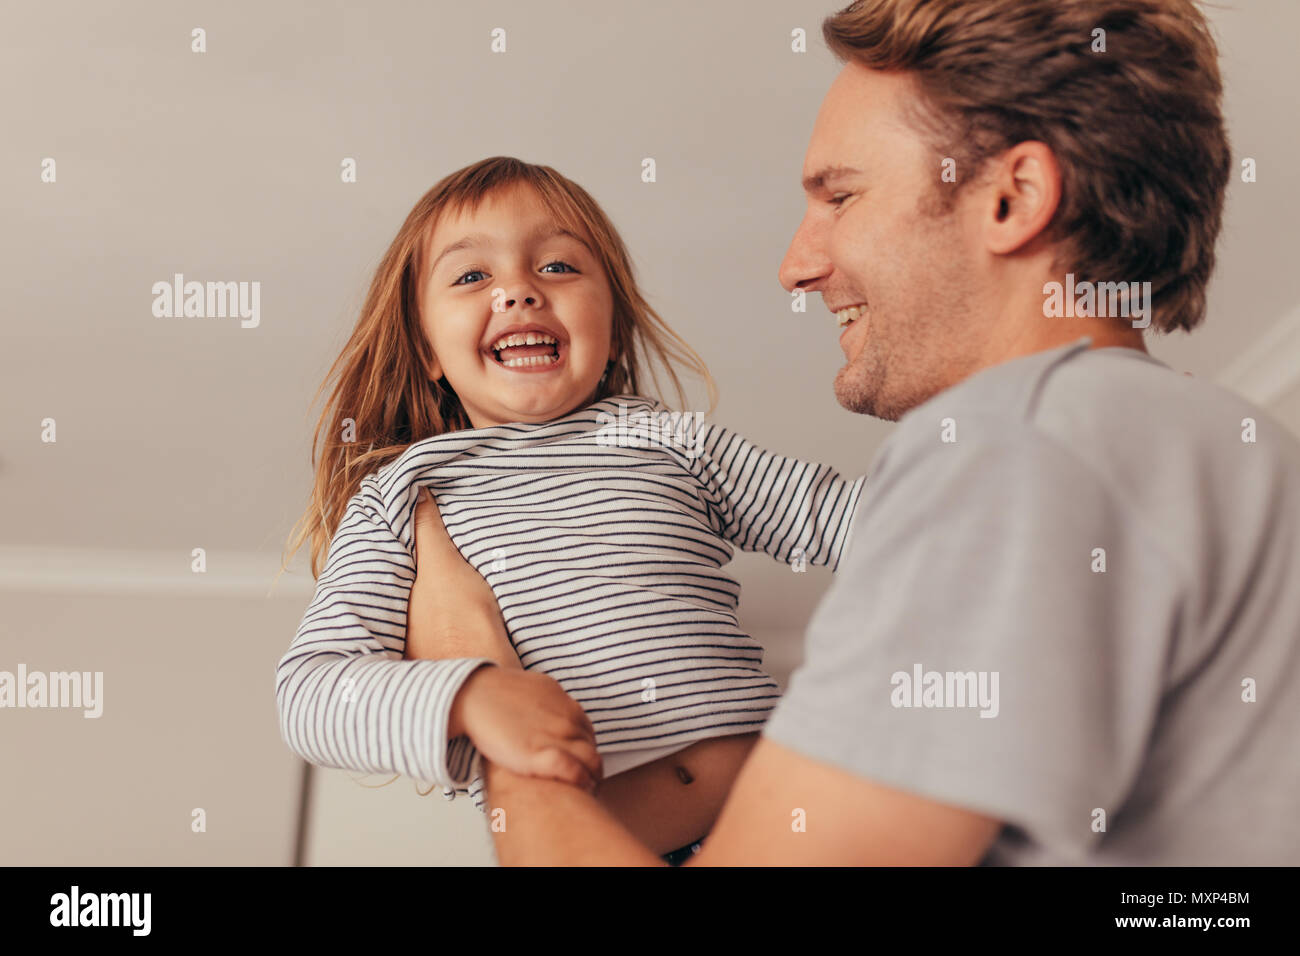 Felice padre e figlia gioca in casa. L'uomo il sollevamento della sua figlia mentre gioca in casa. Foto Stock